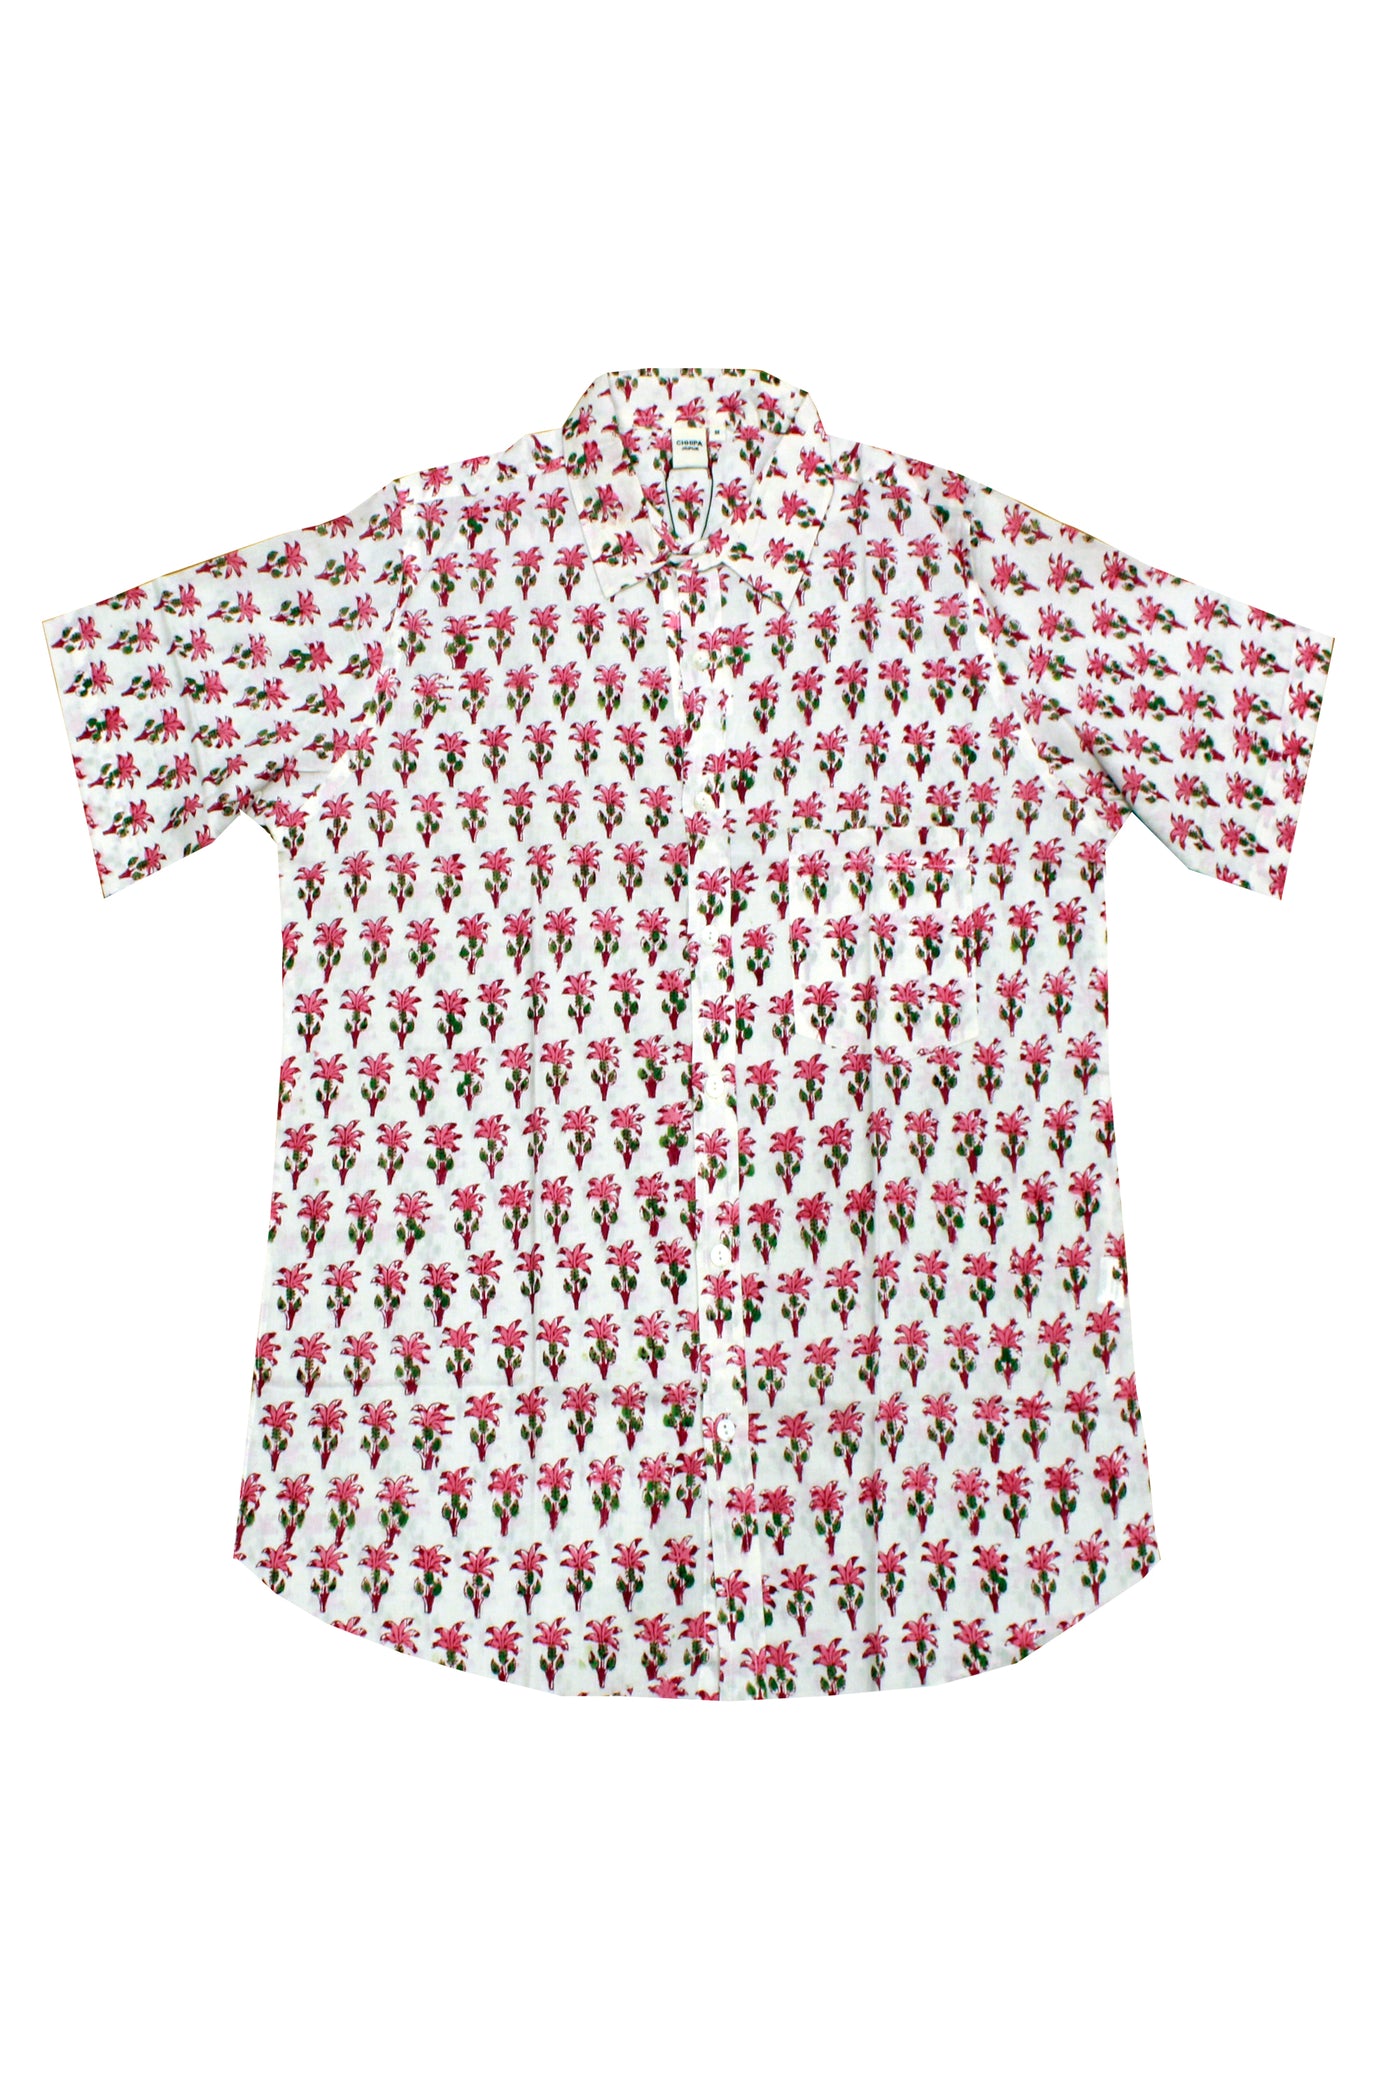 Men Mahin Buti Block Printed Shirt in Pink